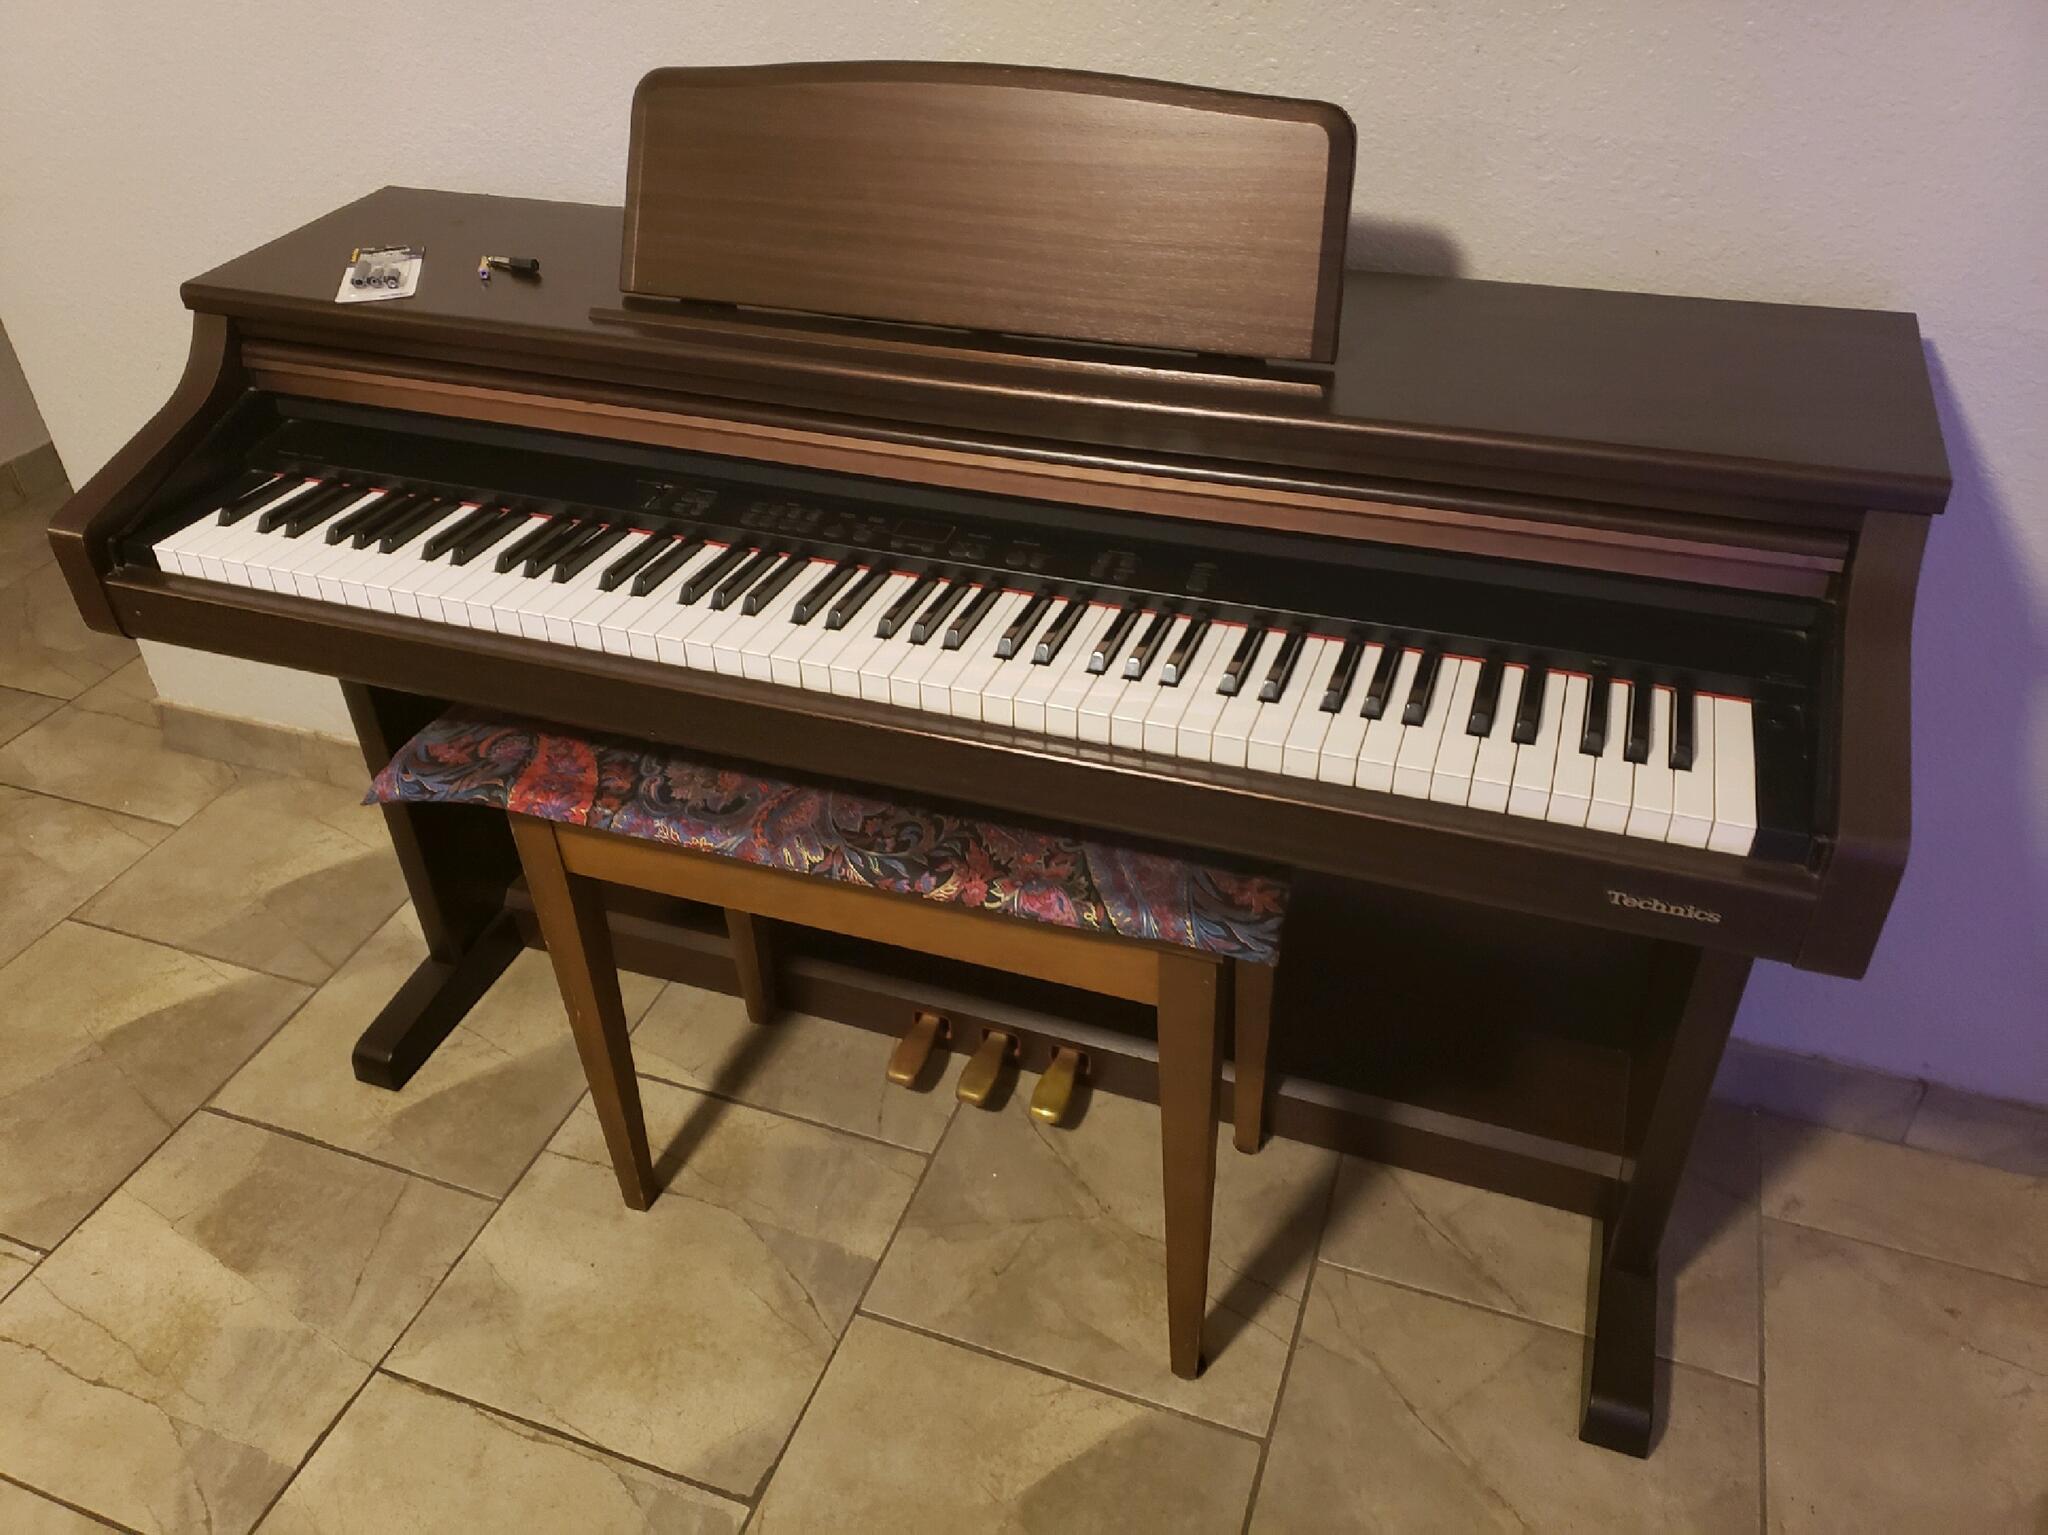 Technics SX-PX206 Digital Piano For $750 In Sun City, AZ | For 